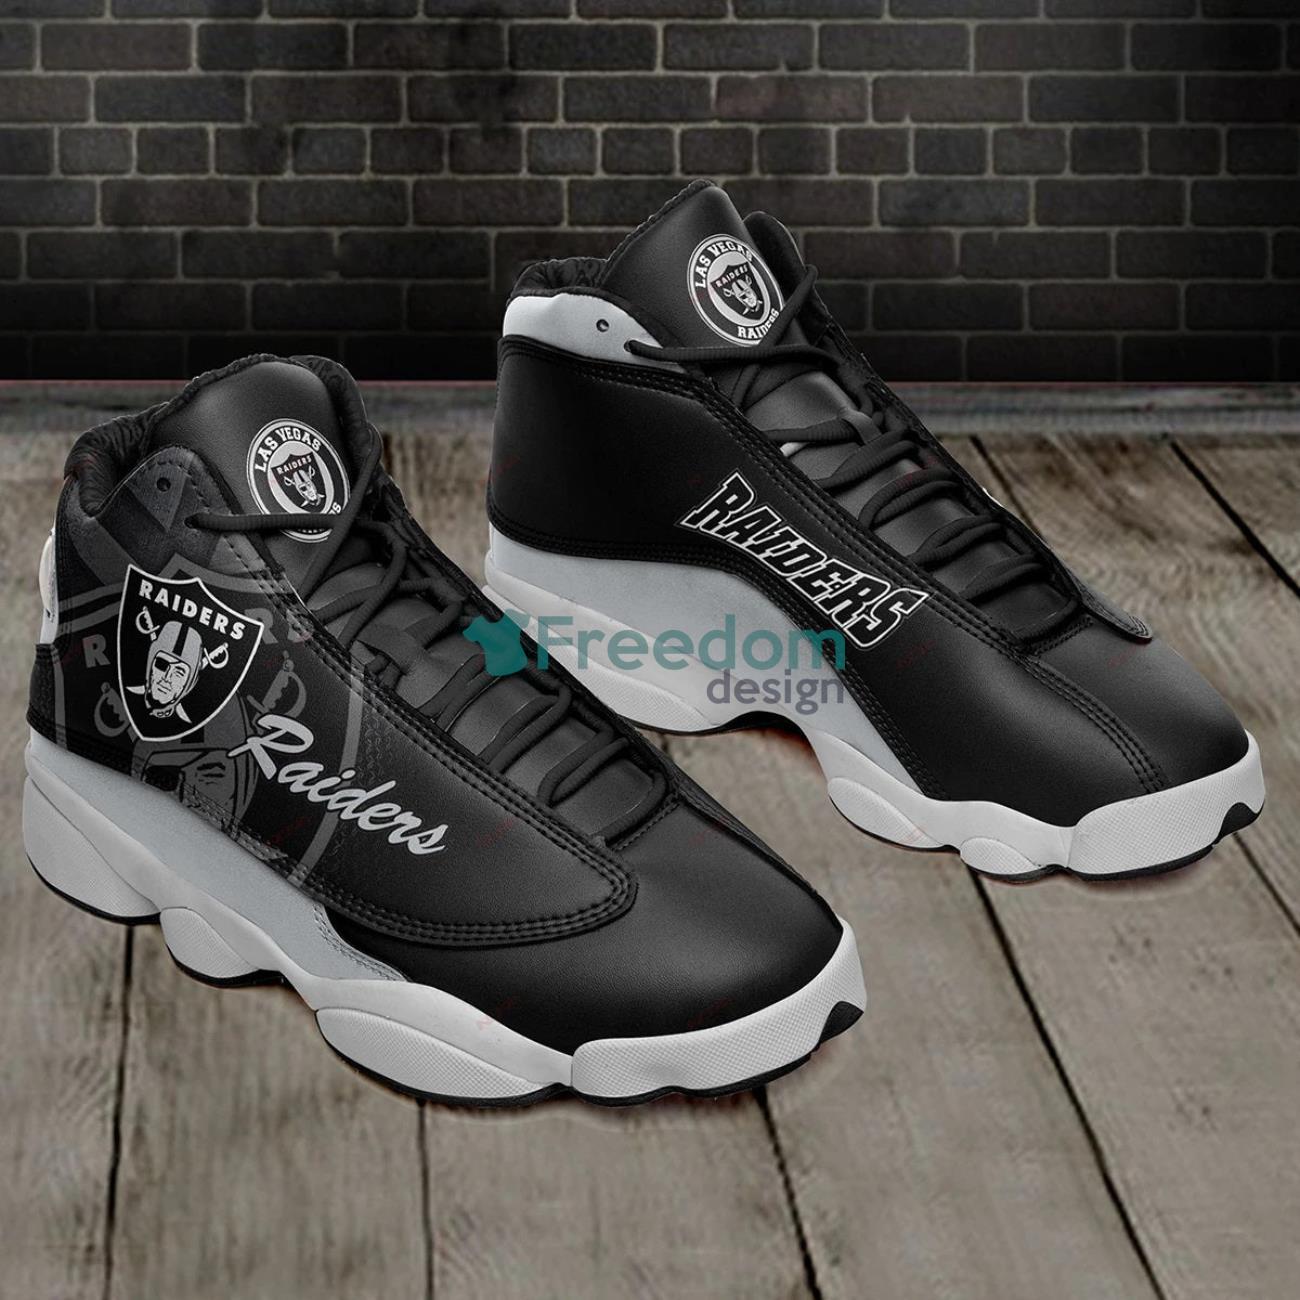 Las Vegas Raiders Air Jordan 13 Sneaker Shoes For Fans